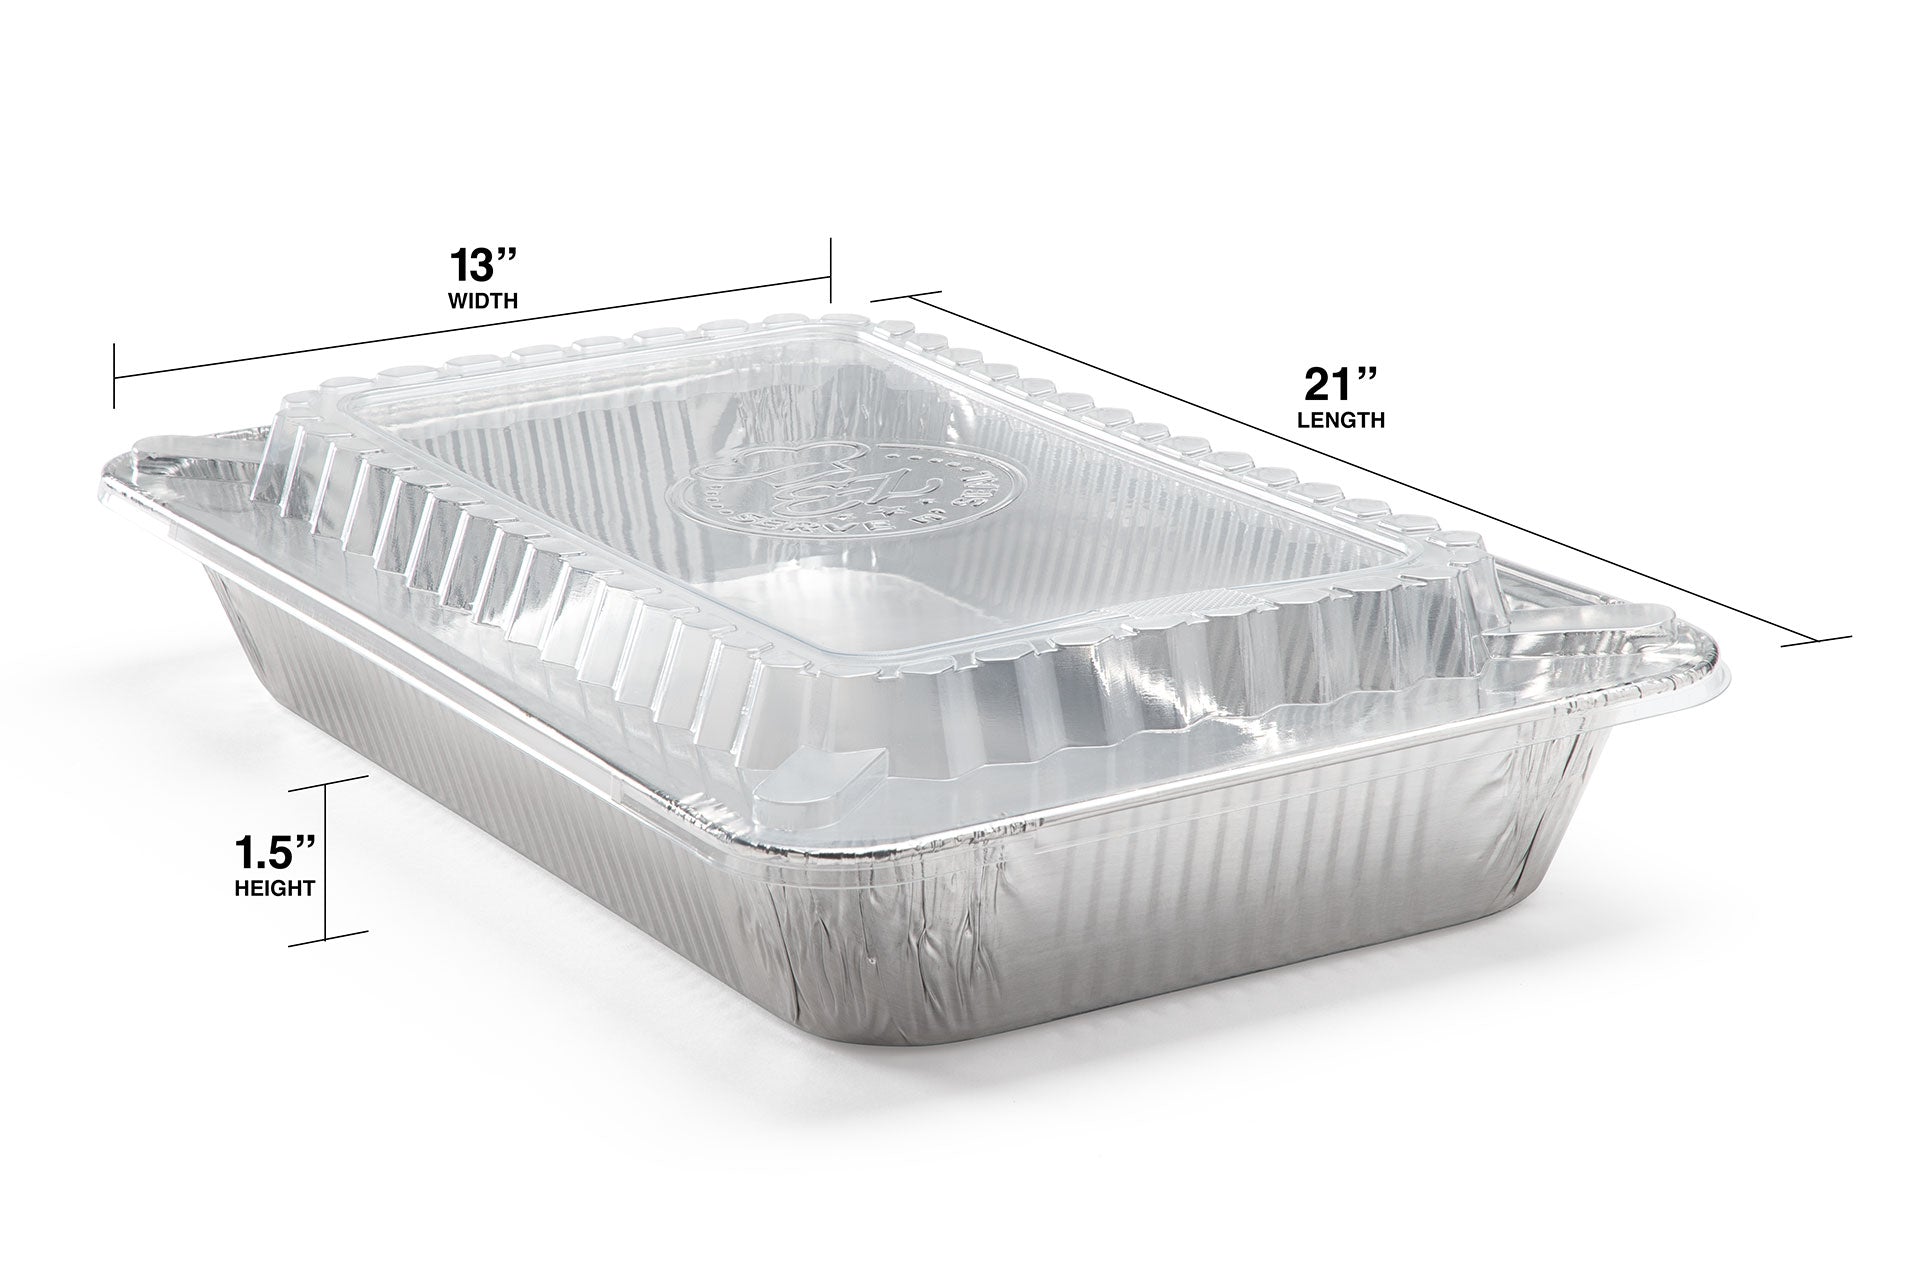 Case Pack -9X13 Disposable Half Size Pans or Aluminum Lids